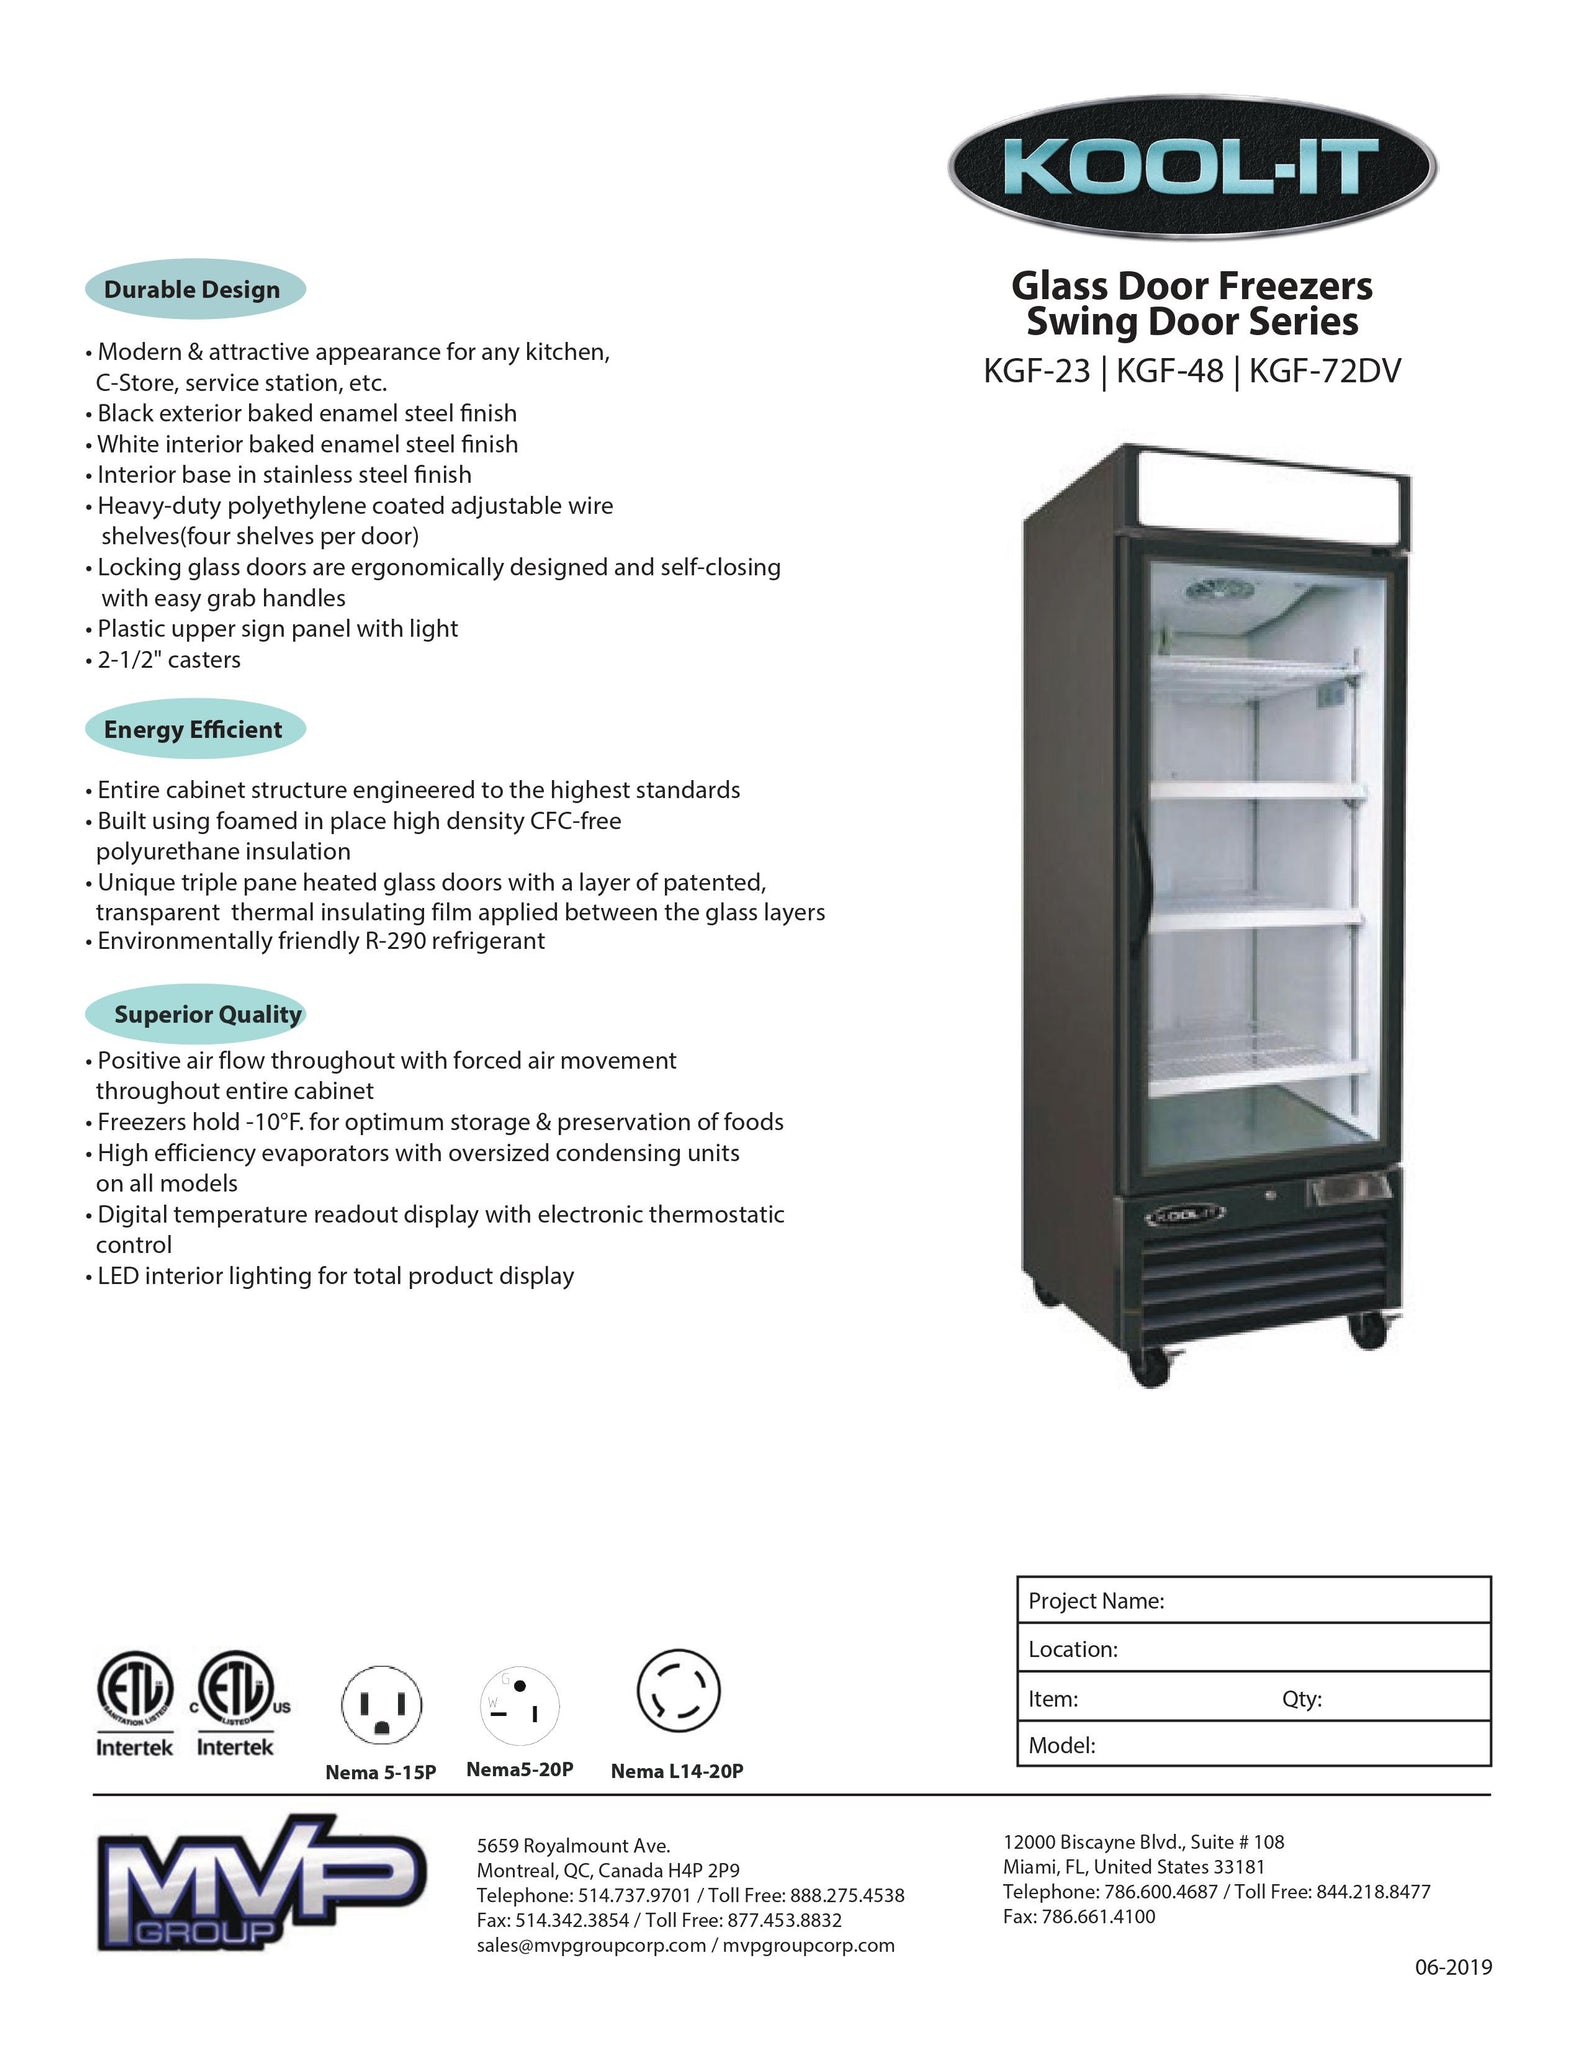 Kool-It KGF-72 DV 81" Three Section Double Volt Glass Door Merchandiser Freezer